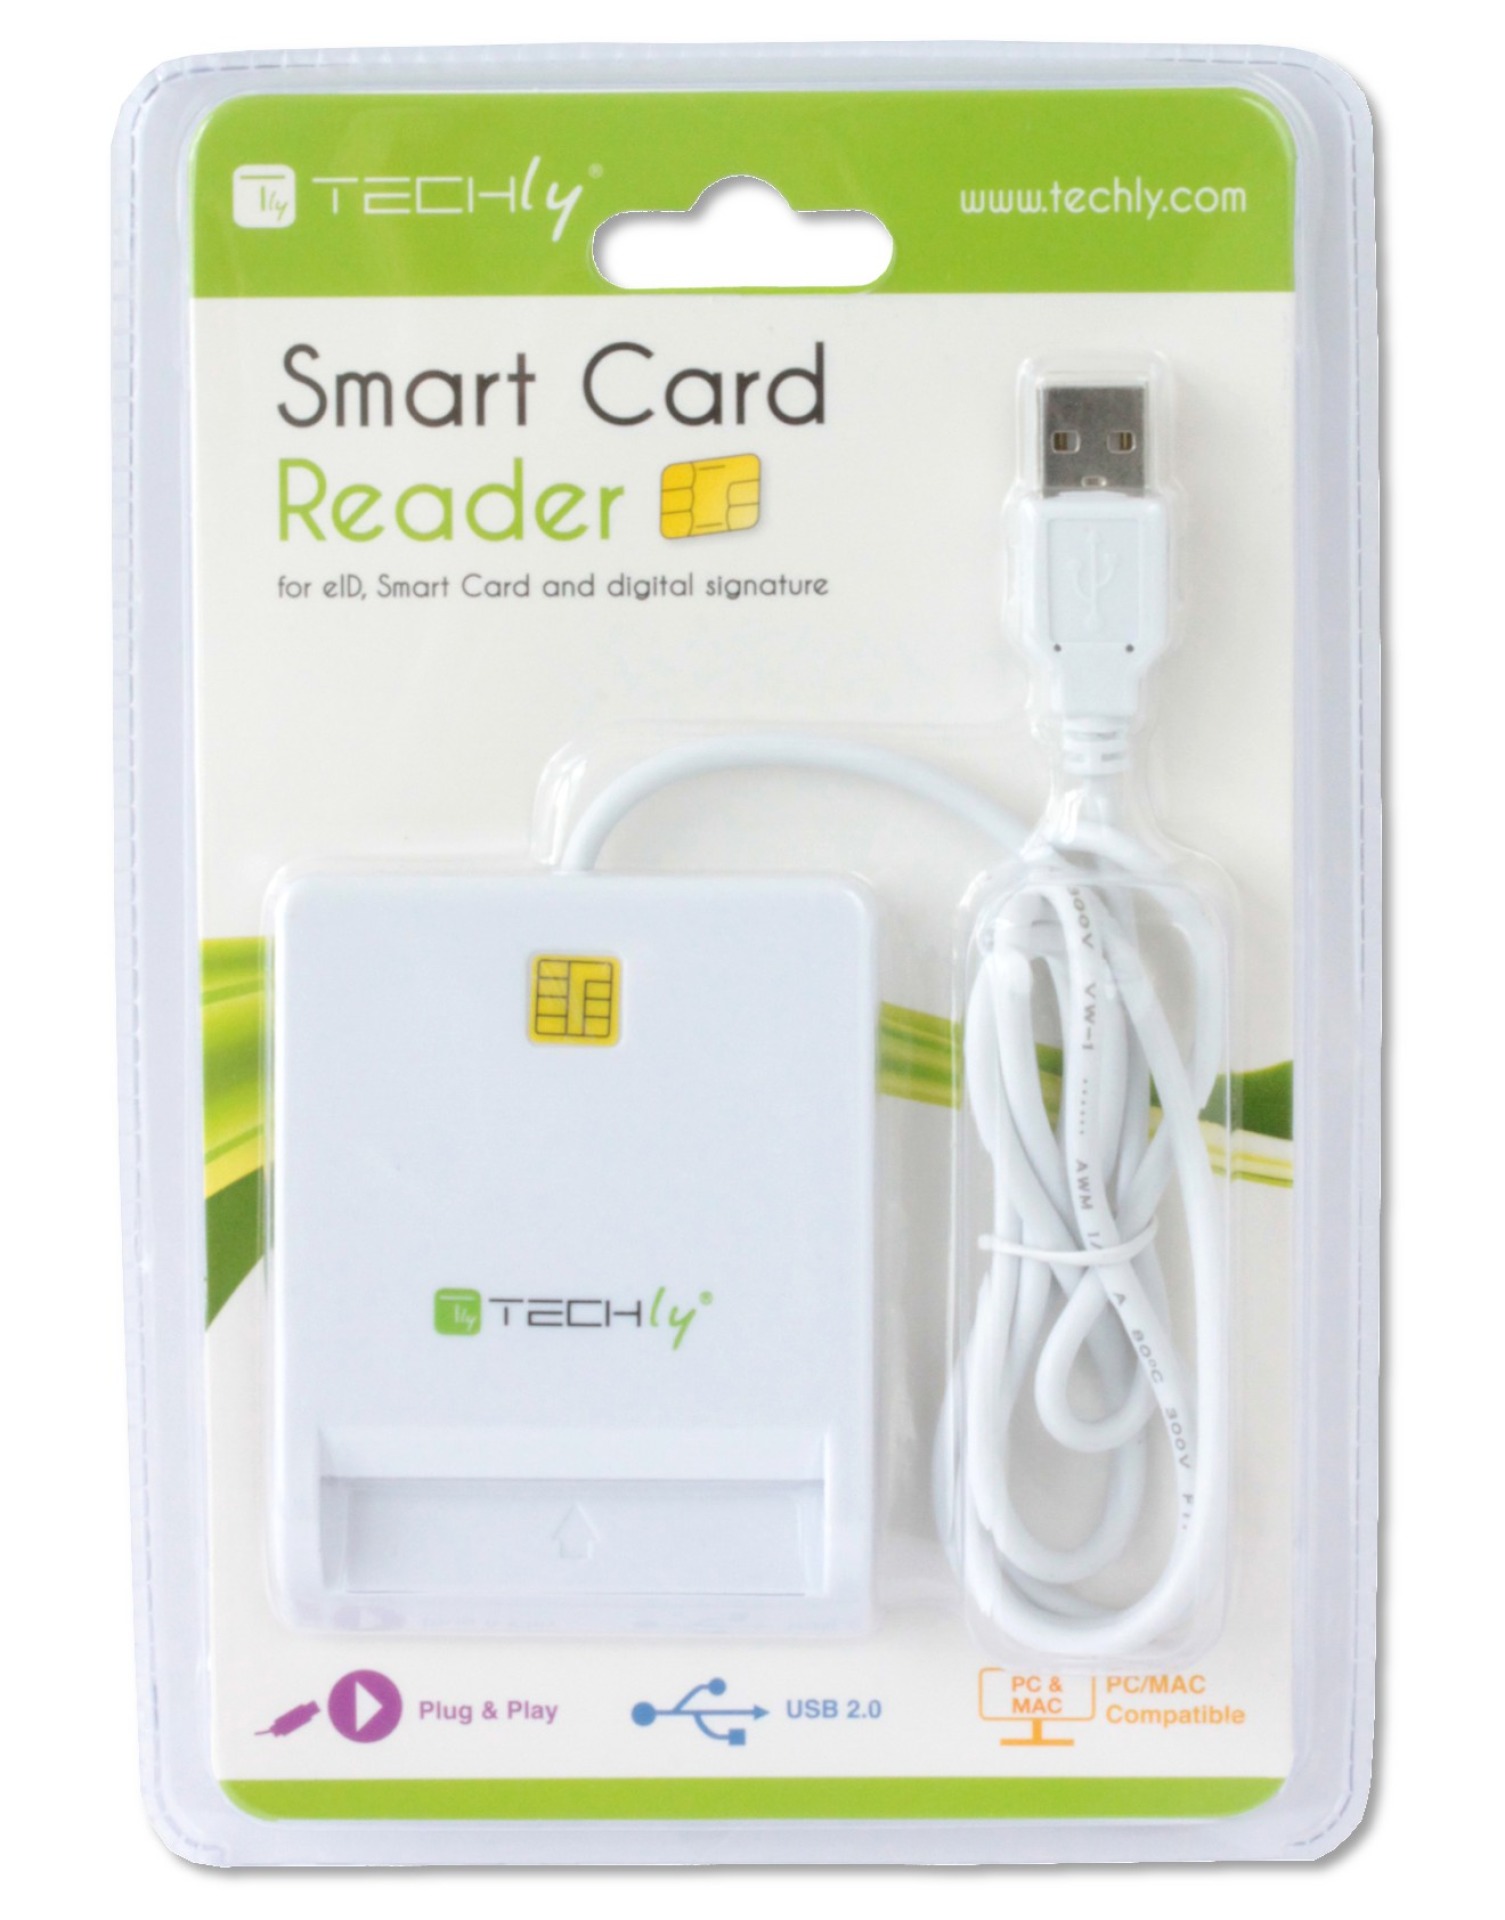 Smart Card Reader via USB 2.0